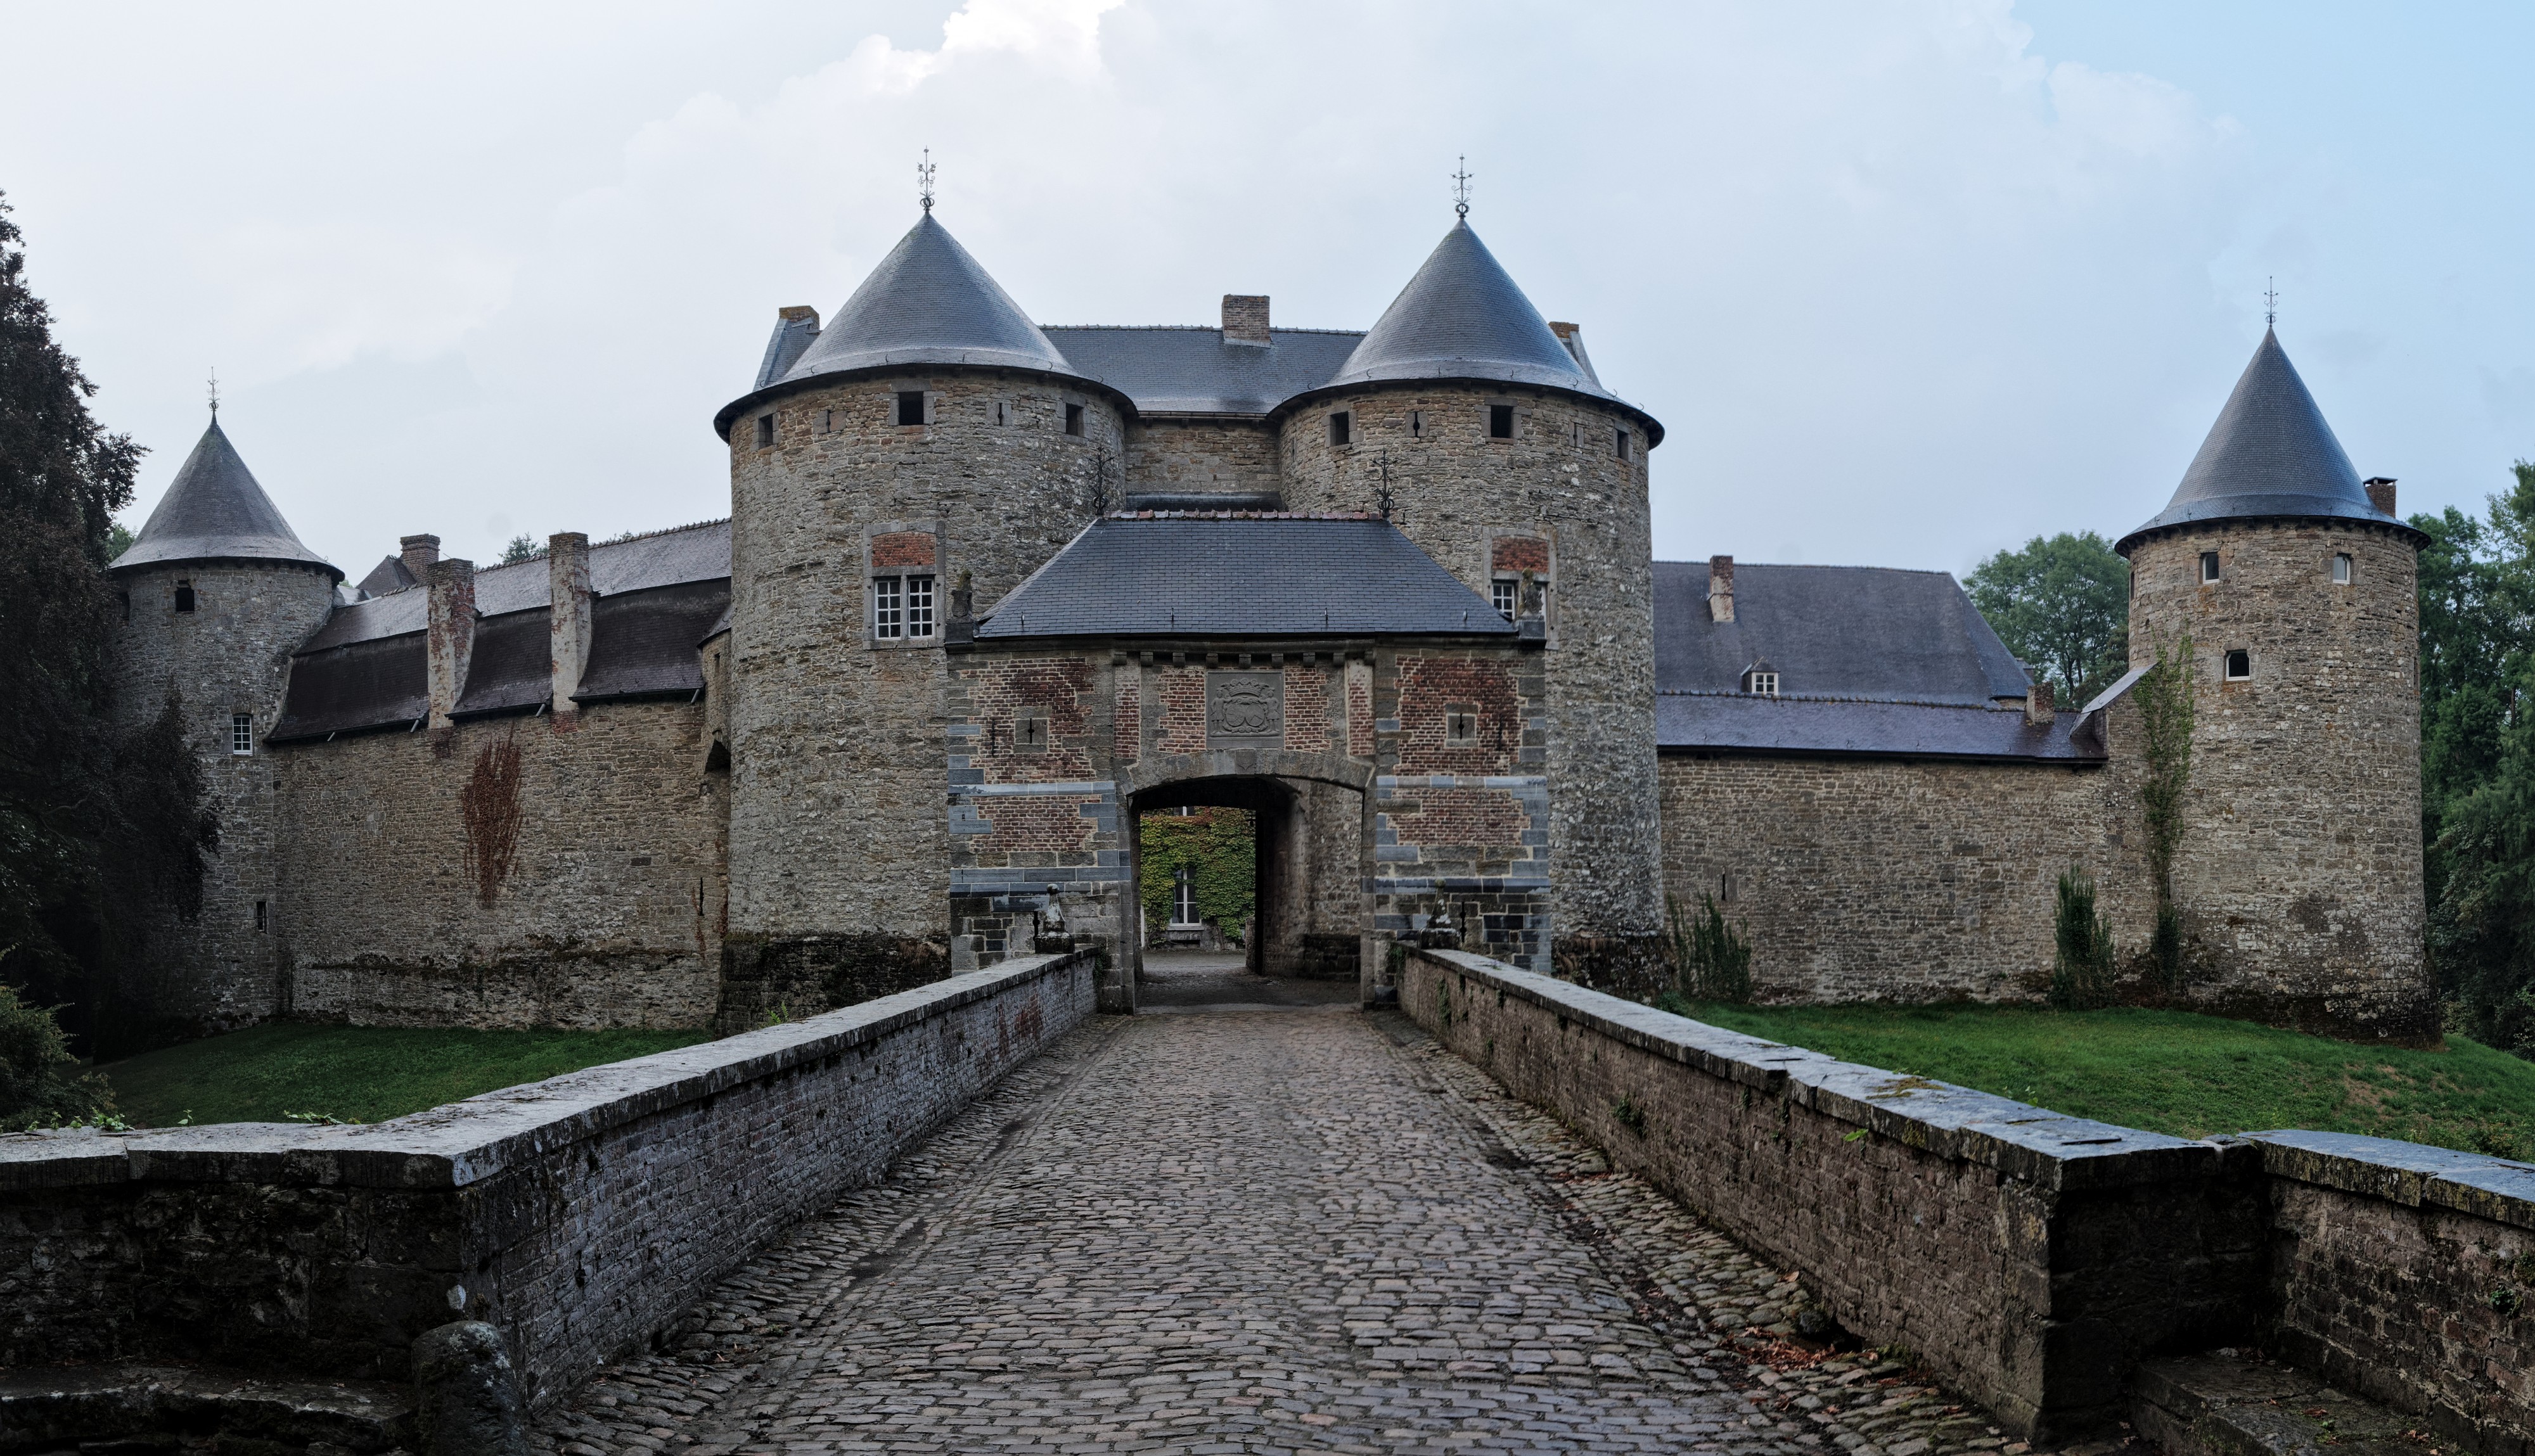 Castle of Corroy-le-Château (DSCF7659-DSCF7662)